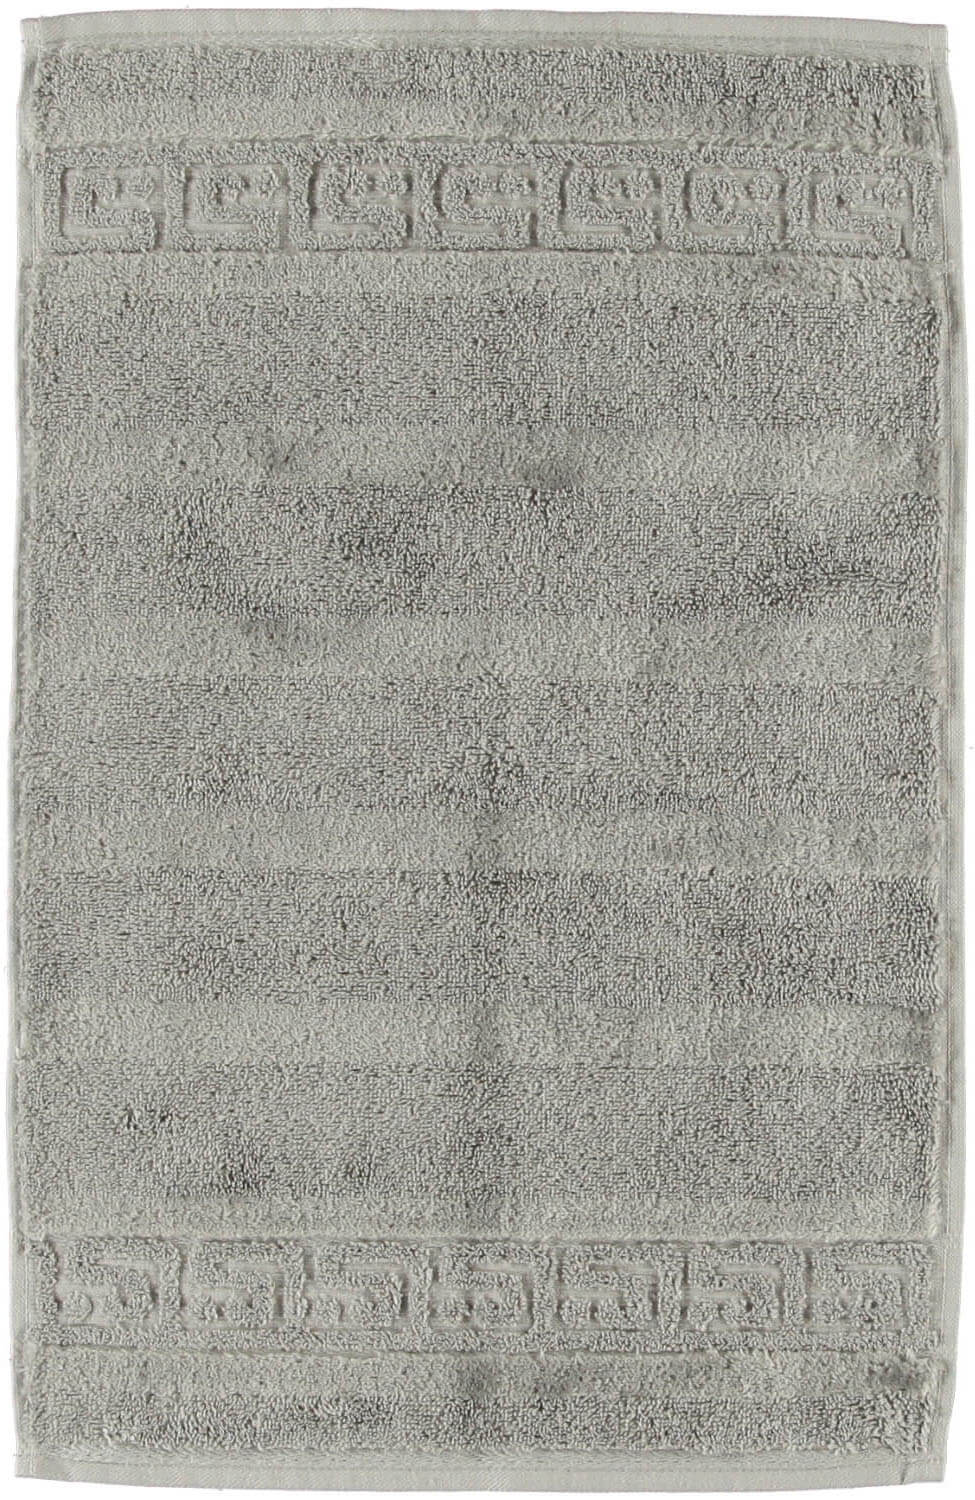 Полотенце Noblesse Uni Graphit ☞ Размер: 50 x 100 см